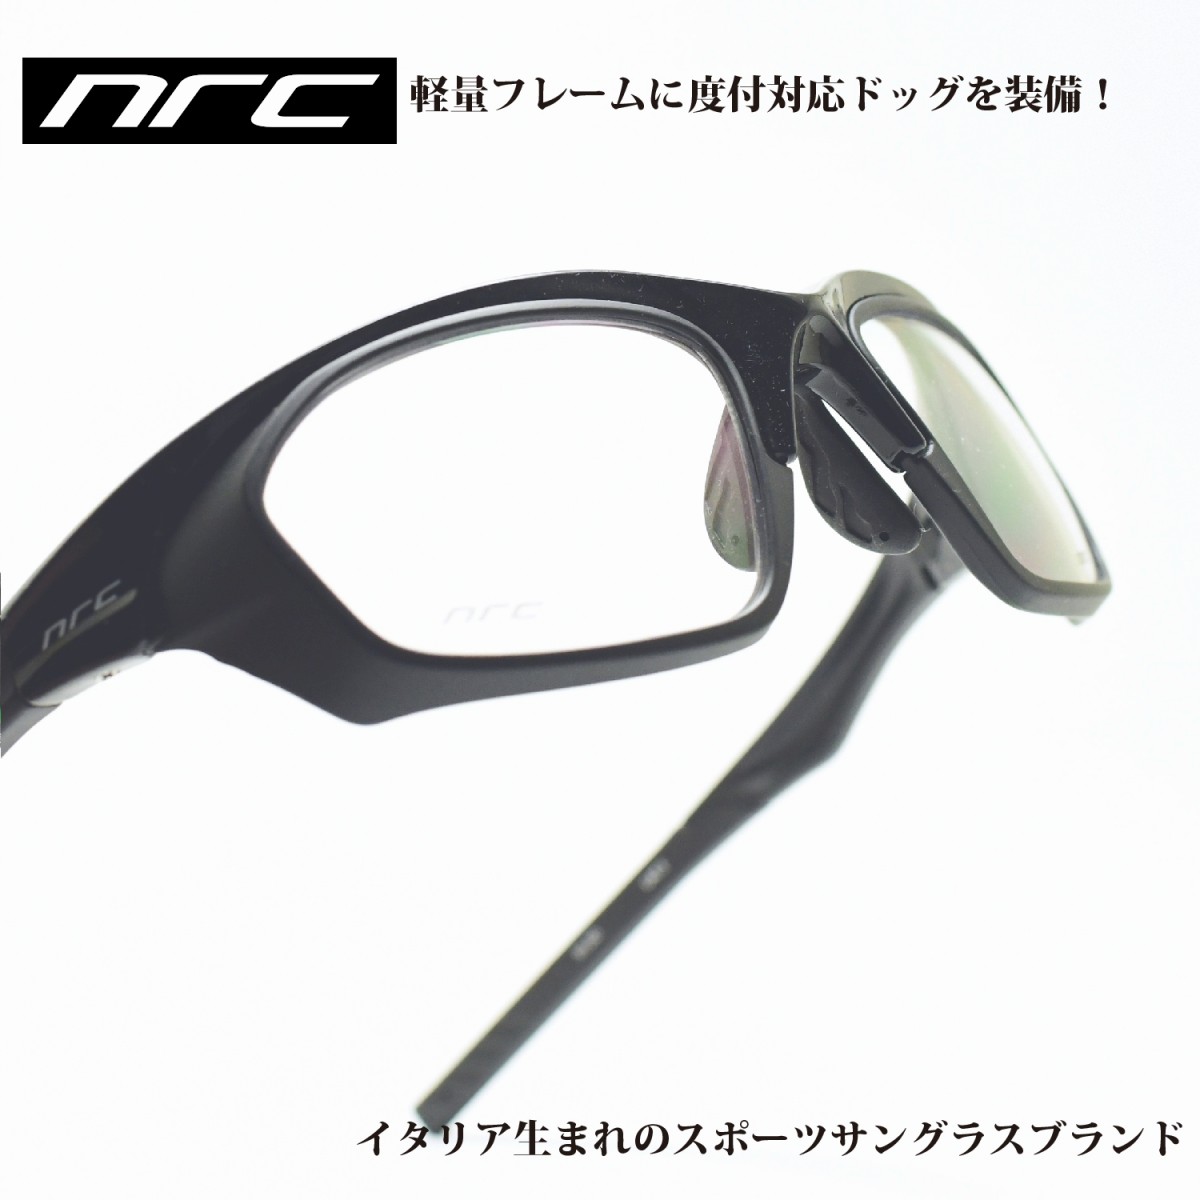 楽天市場 Nrc エヌアールシー S5shiny Black Optical Docメガネ 眼鏡 めがね メンズ レディース おしゃれ ブランド人気 おすすめ フレーム 流行り 度付き レンズ サングラス デコリンメガネ